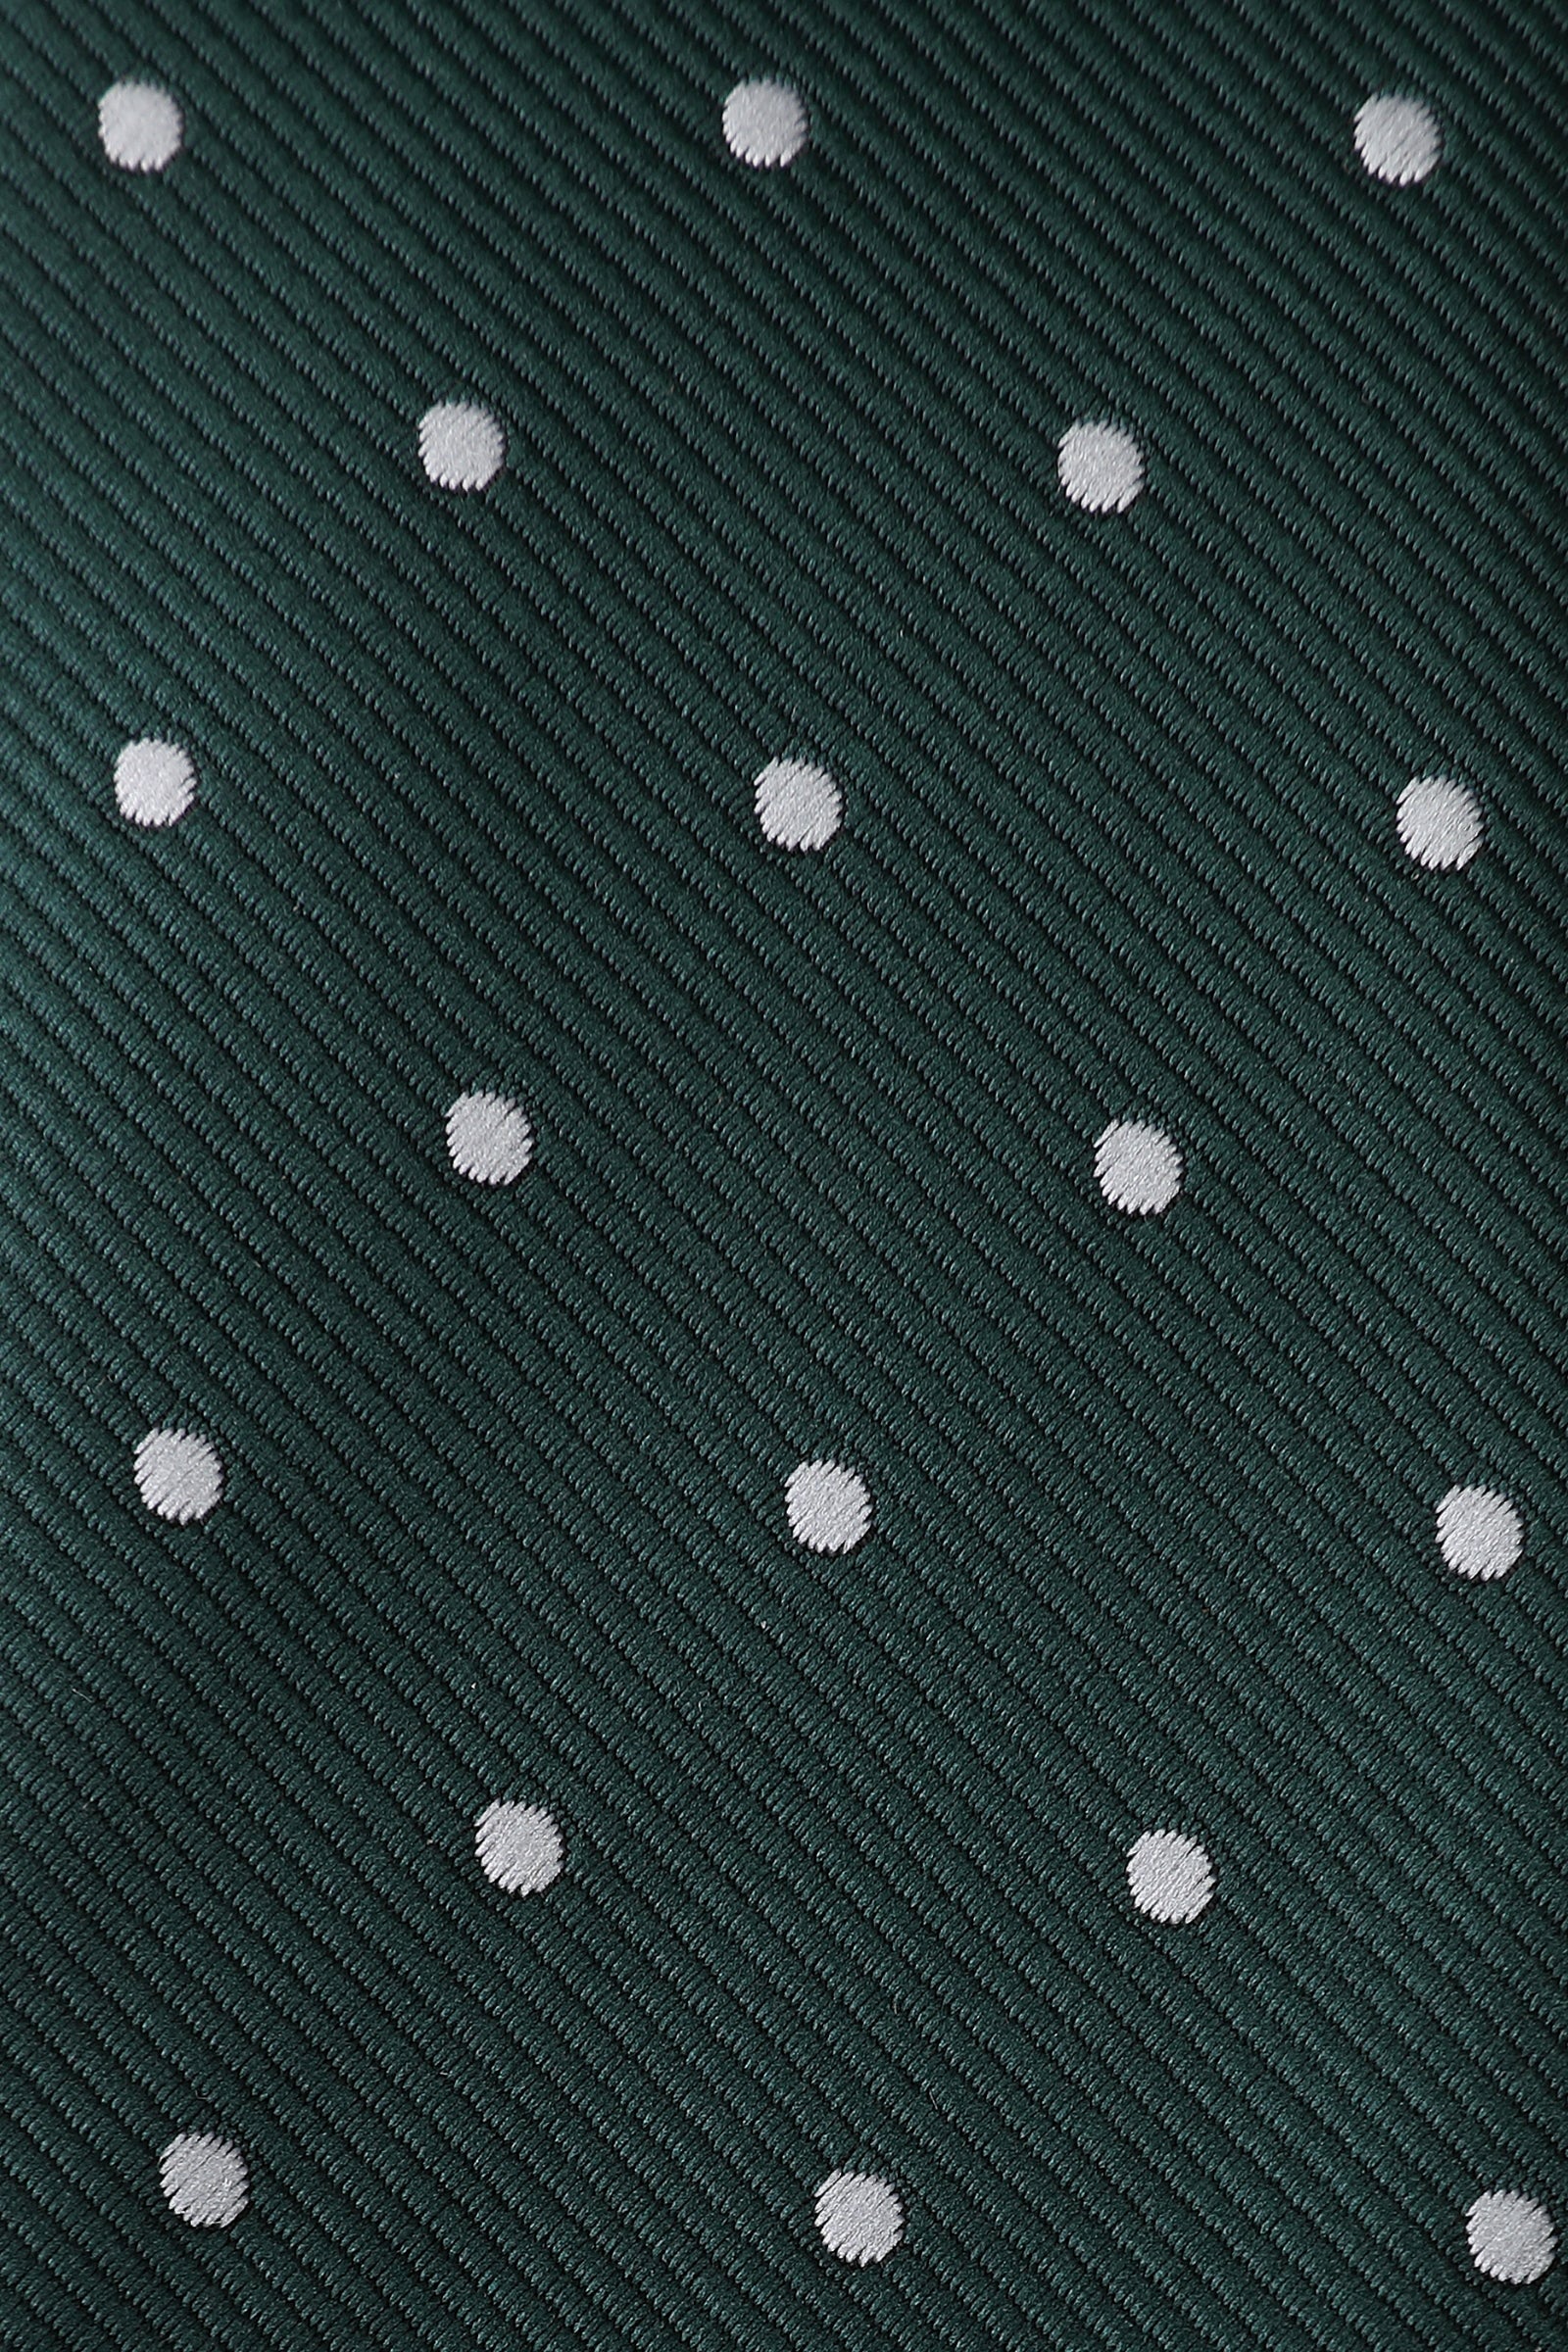 Forest Green Polka Dots Kids Necktie Fabric